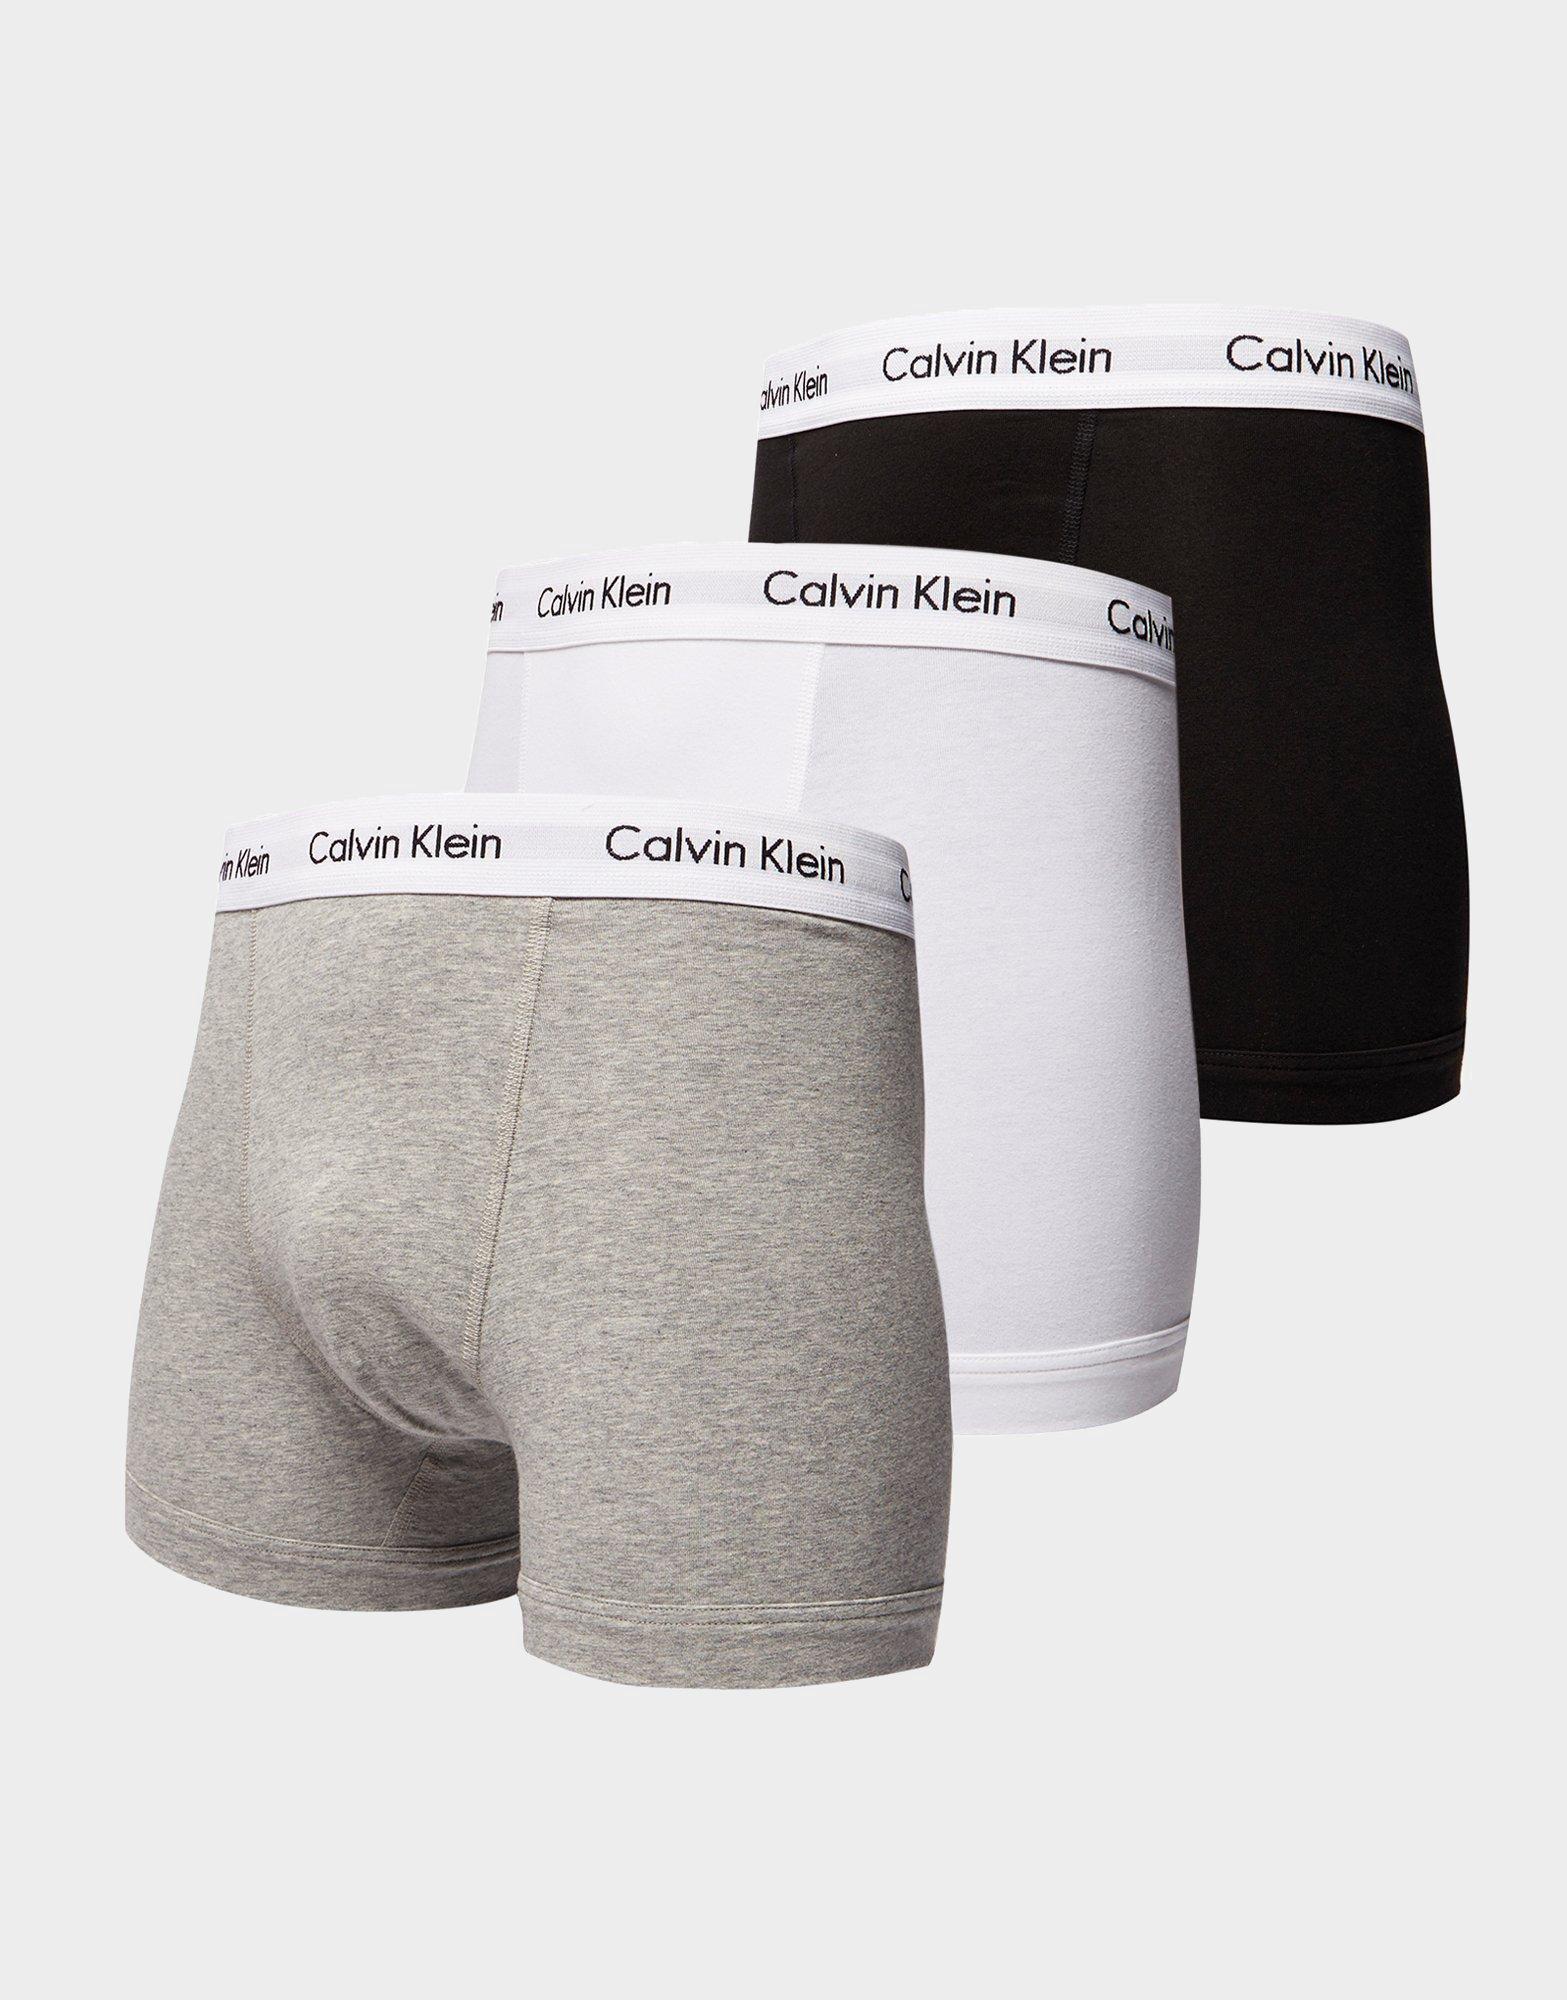 calvin klein boxers next